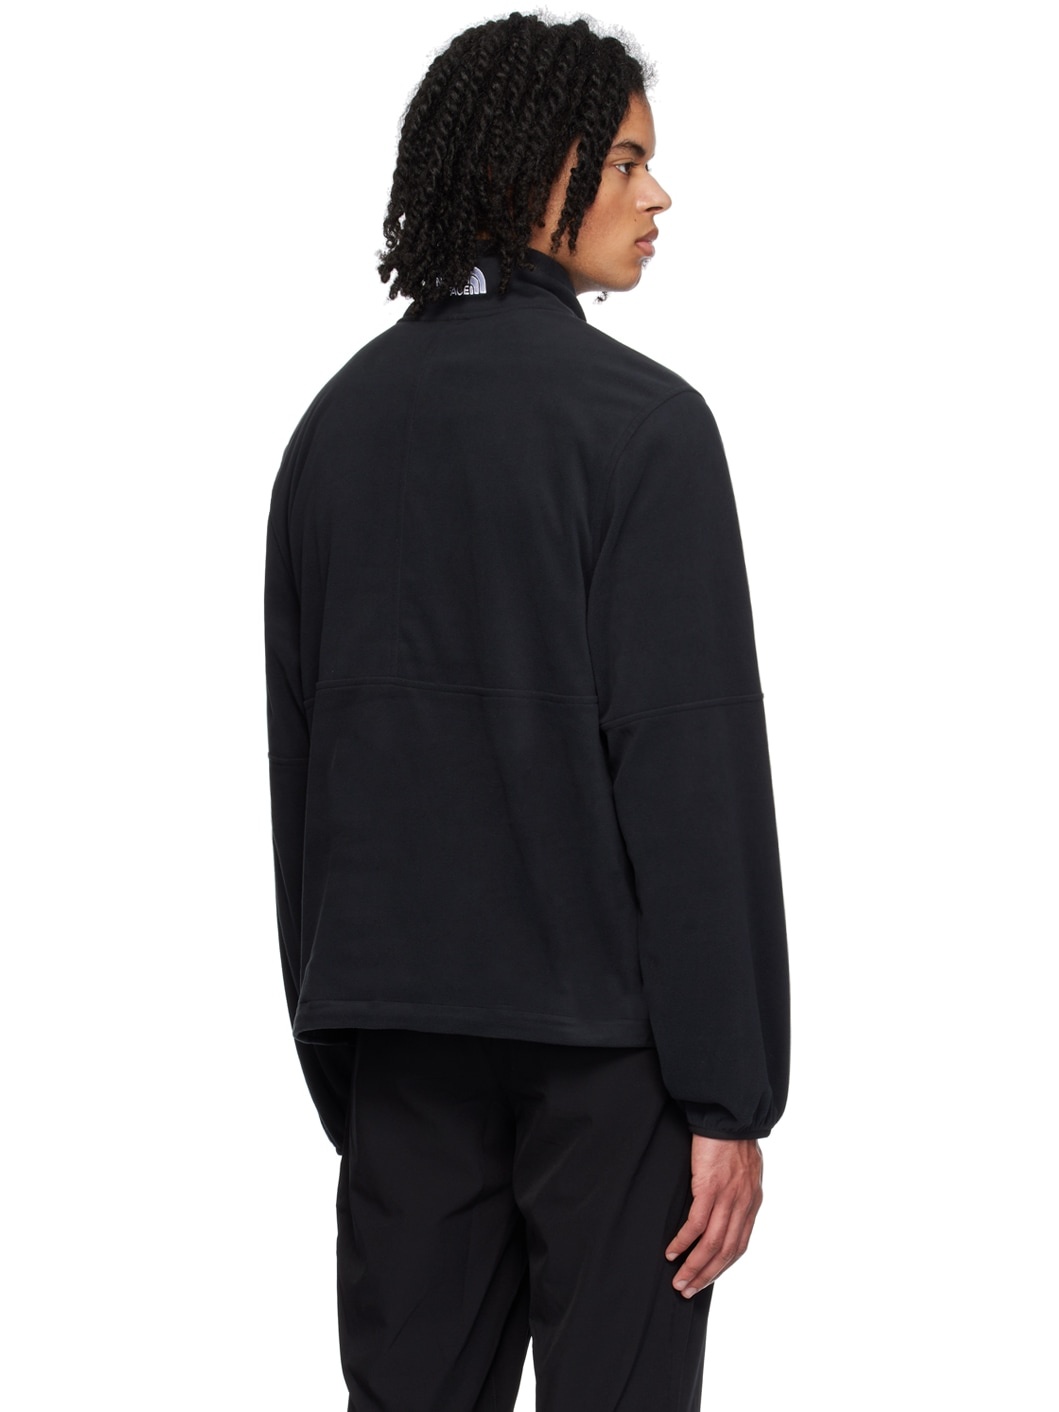 Black Half-Zip Sweater - 3